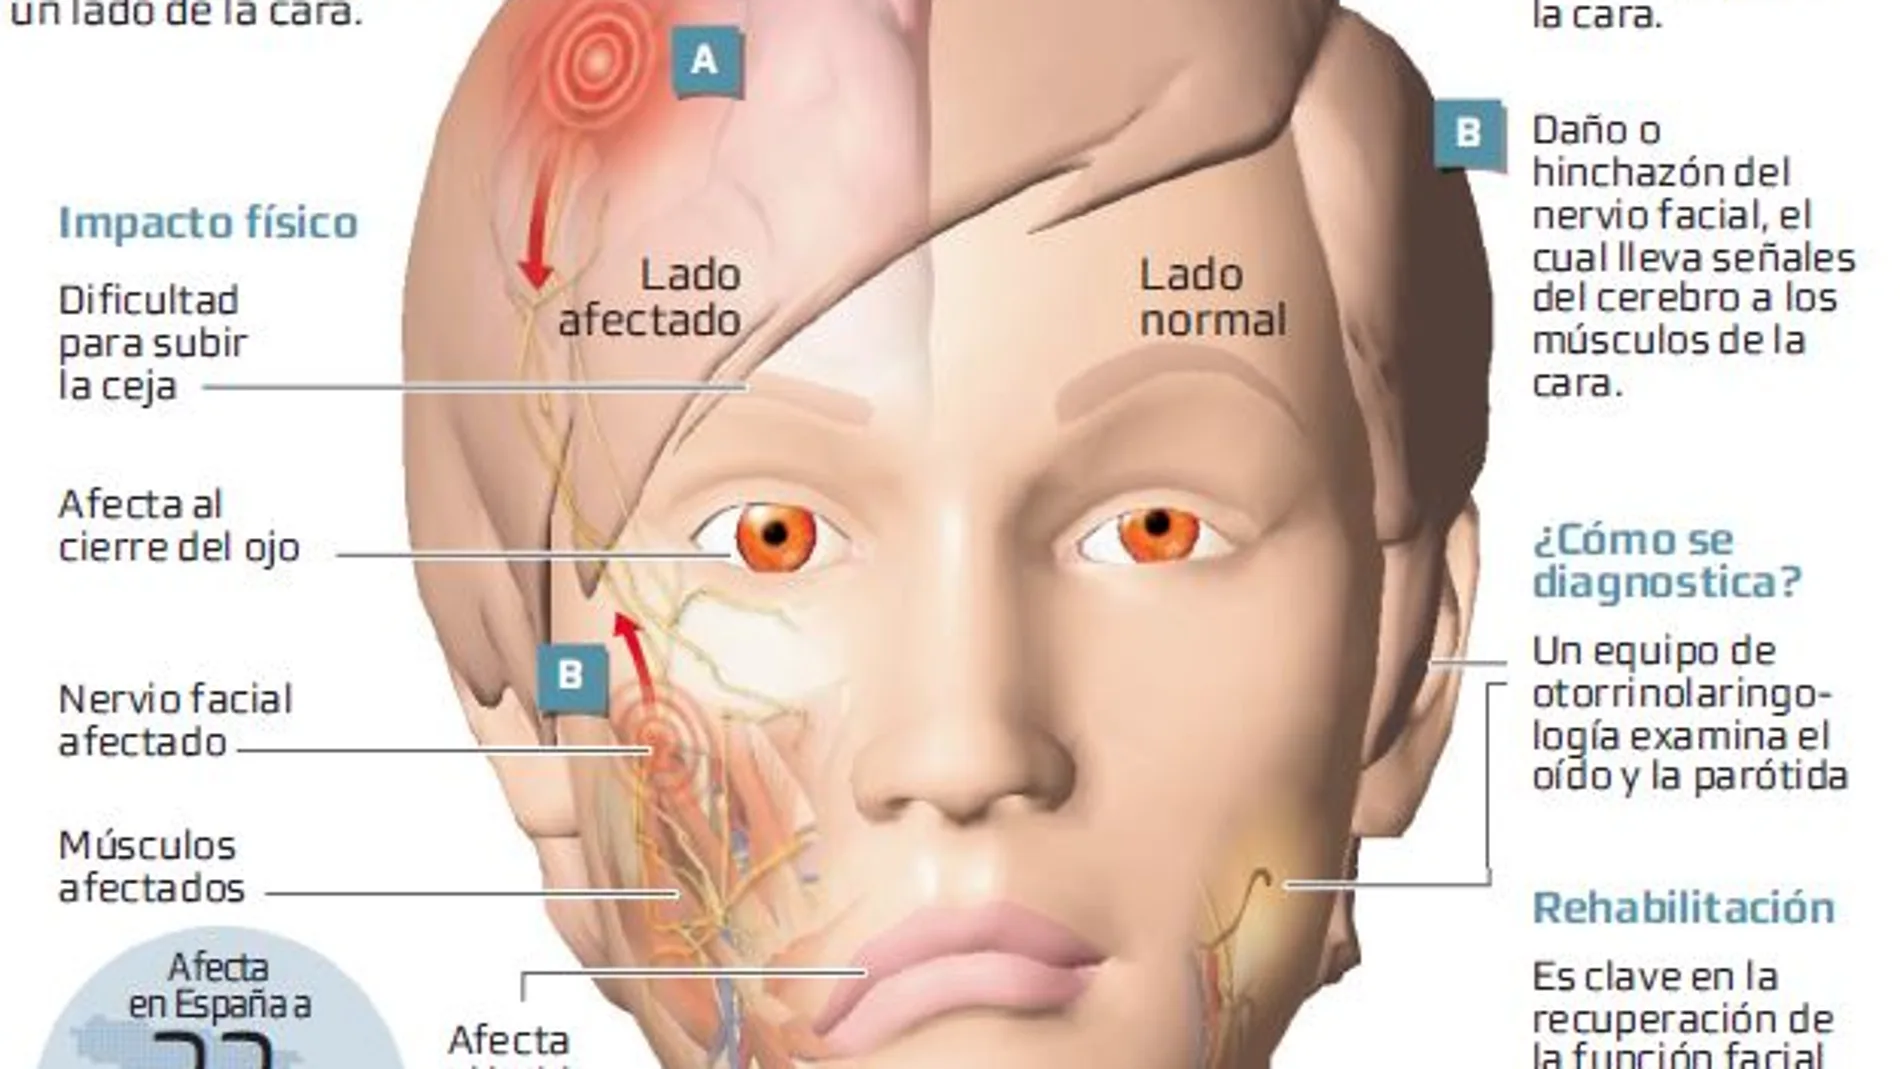 La rehabilitación recupera la función facial tras una parálisis